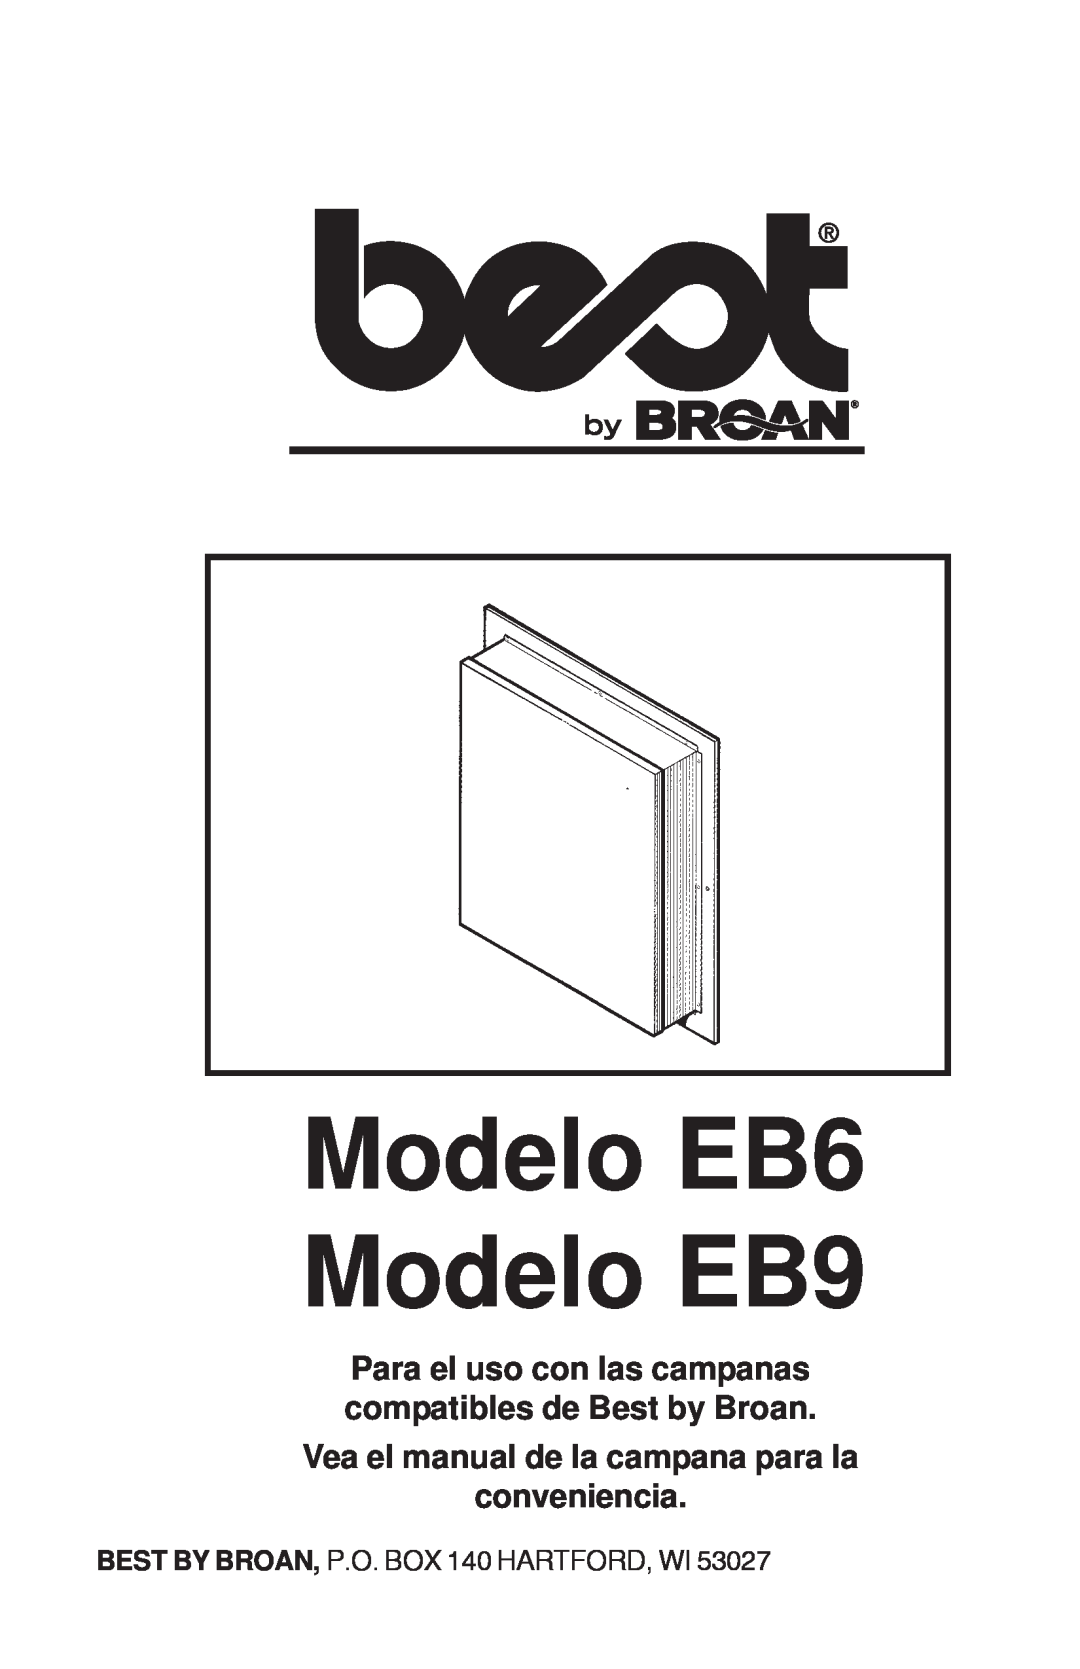 Best Modelo EB6 Modelo EB9, Vea el manual de la campana para la conveniencia, BEST BY BROAN, P.O. BOX 140 HARTFORD, WI 